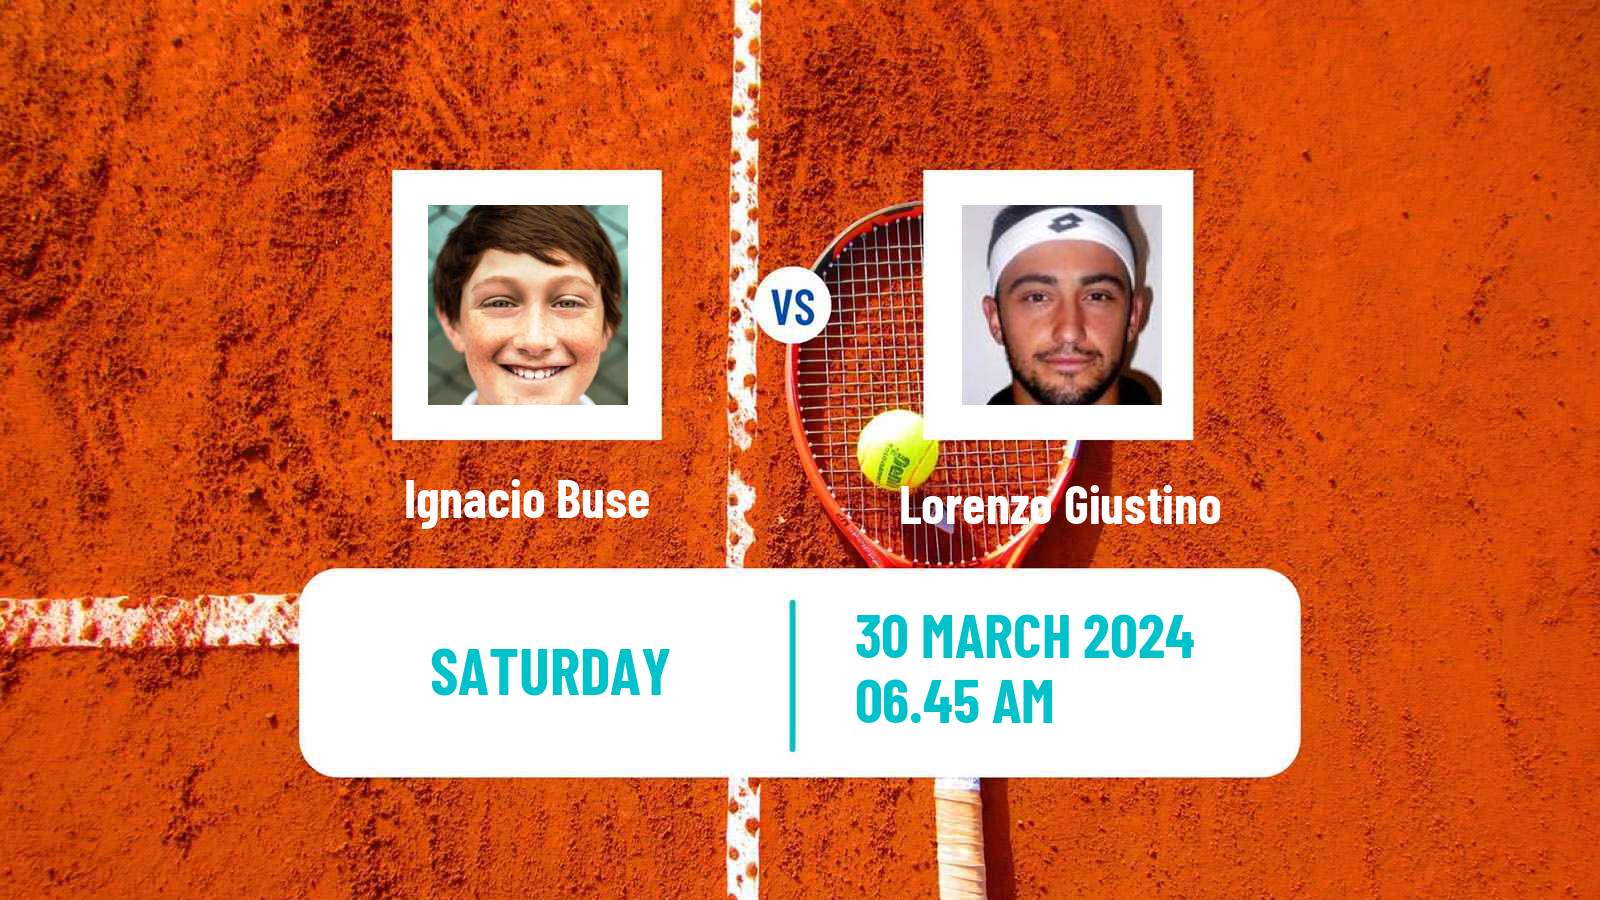 Tennis ITF M25 Tarragona Men Ignacio Buse - Lorenzo Giustino